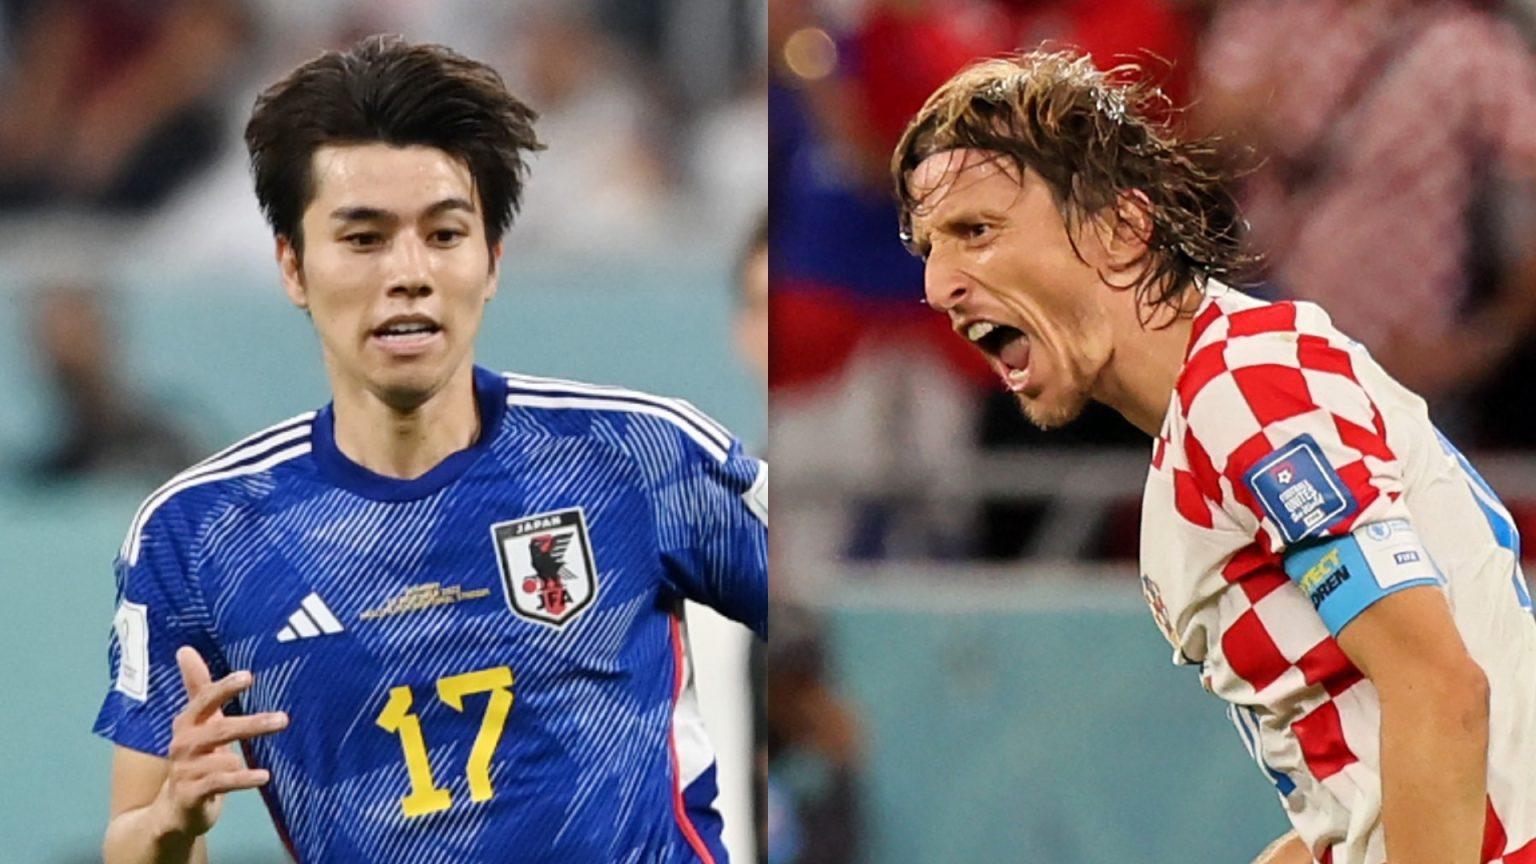 تشكيلة منتخب اليابان وكرواتيا في كأس العالم 2022